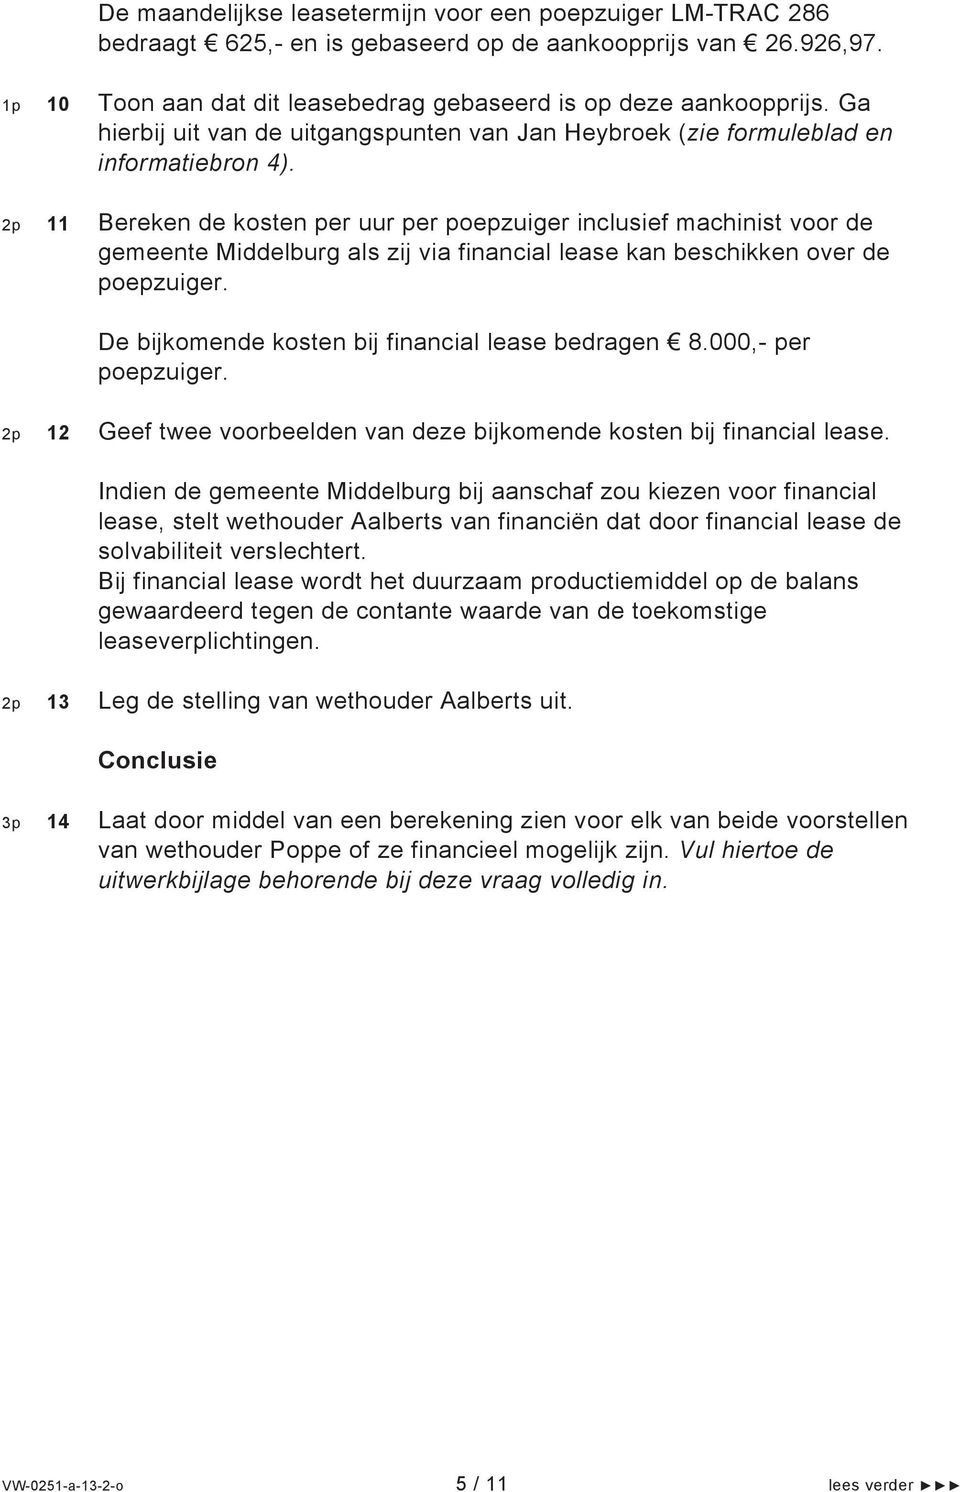 2p 11 Bereken de kosten per uur per poepzuiger inclusief machinist voor de gemeente Middelburg als zij via financial lease kan beschikken over de poepzuiger.